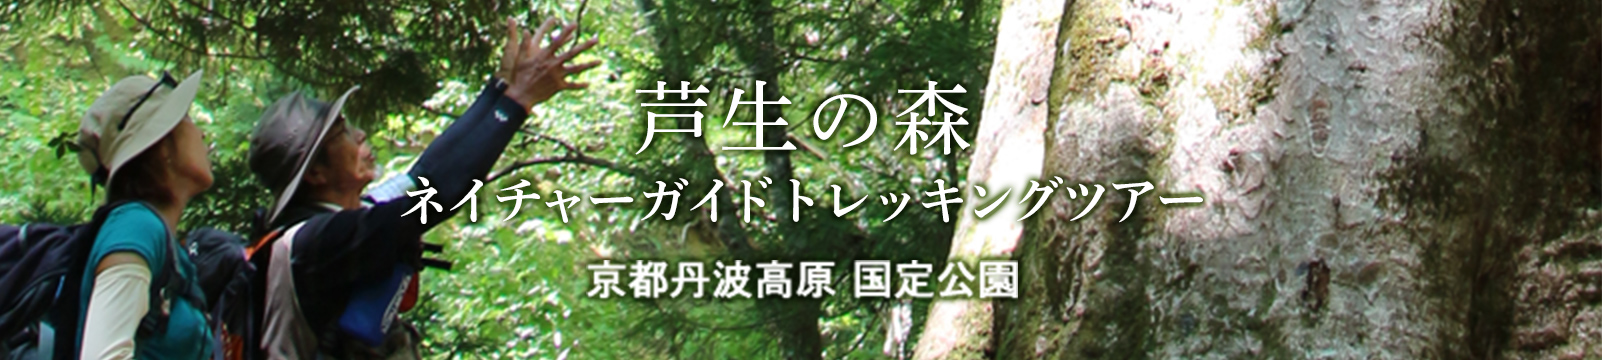 芦生の森ネイチャーガイドトレッキングツアー